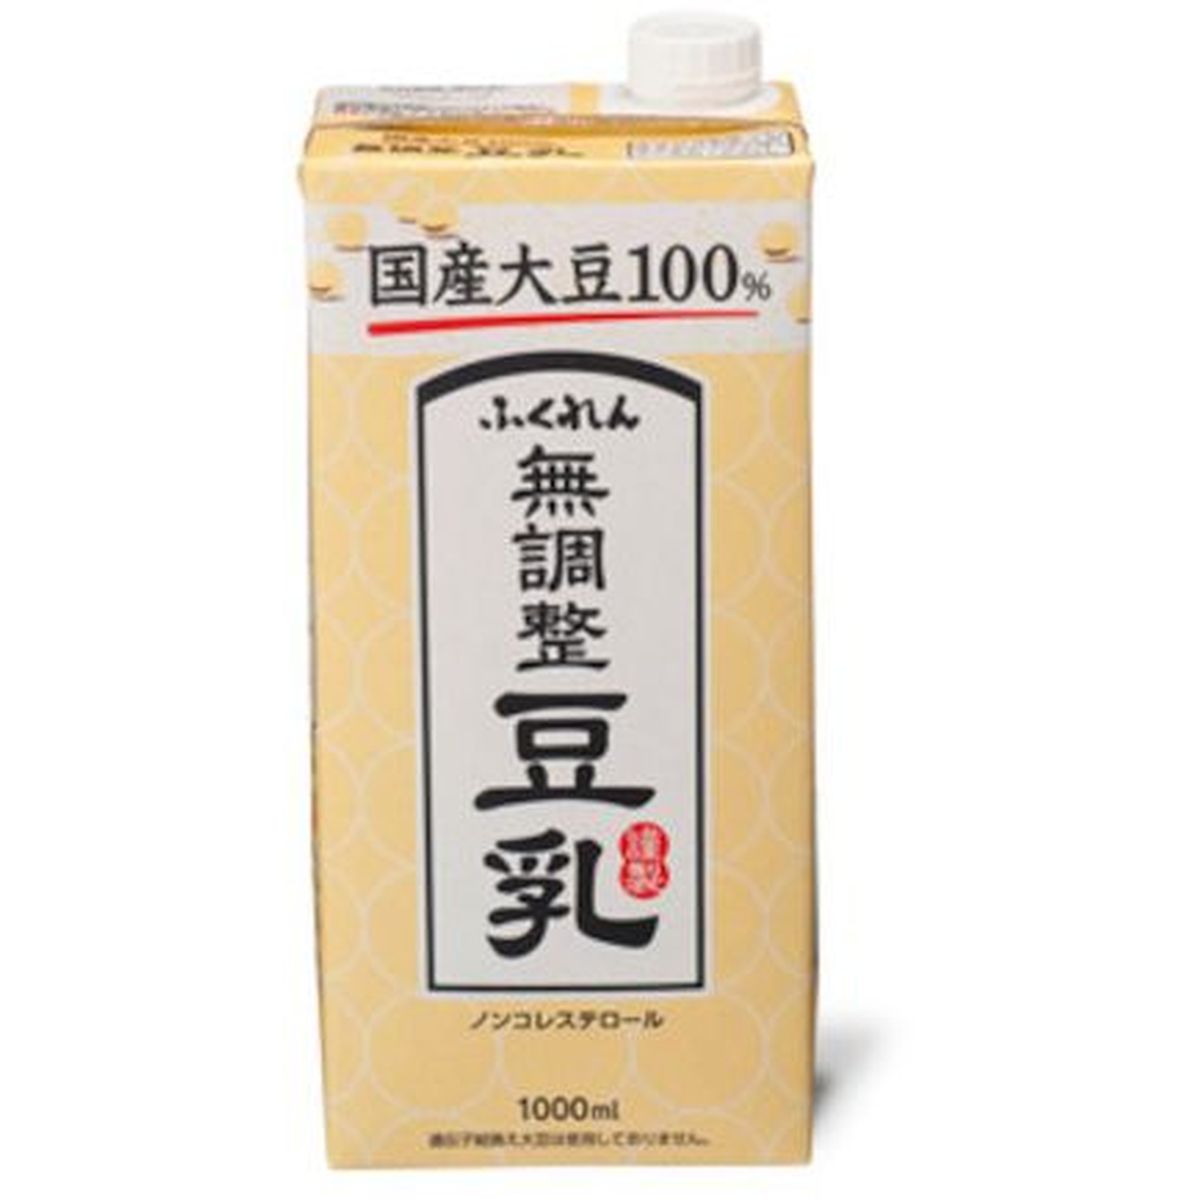 【6個入リ】フクレン 国産大豆無調整豆乳 1L